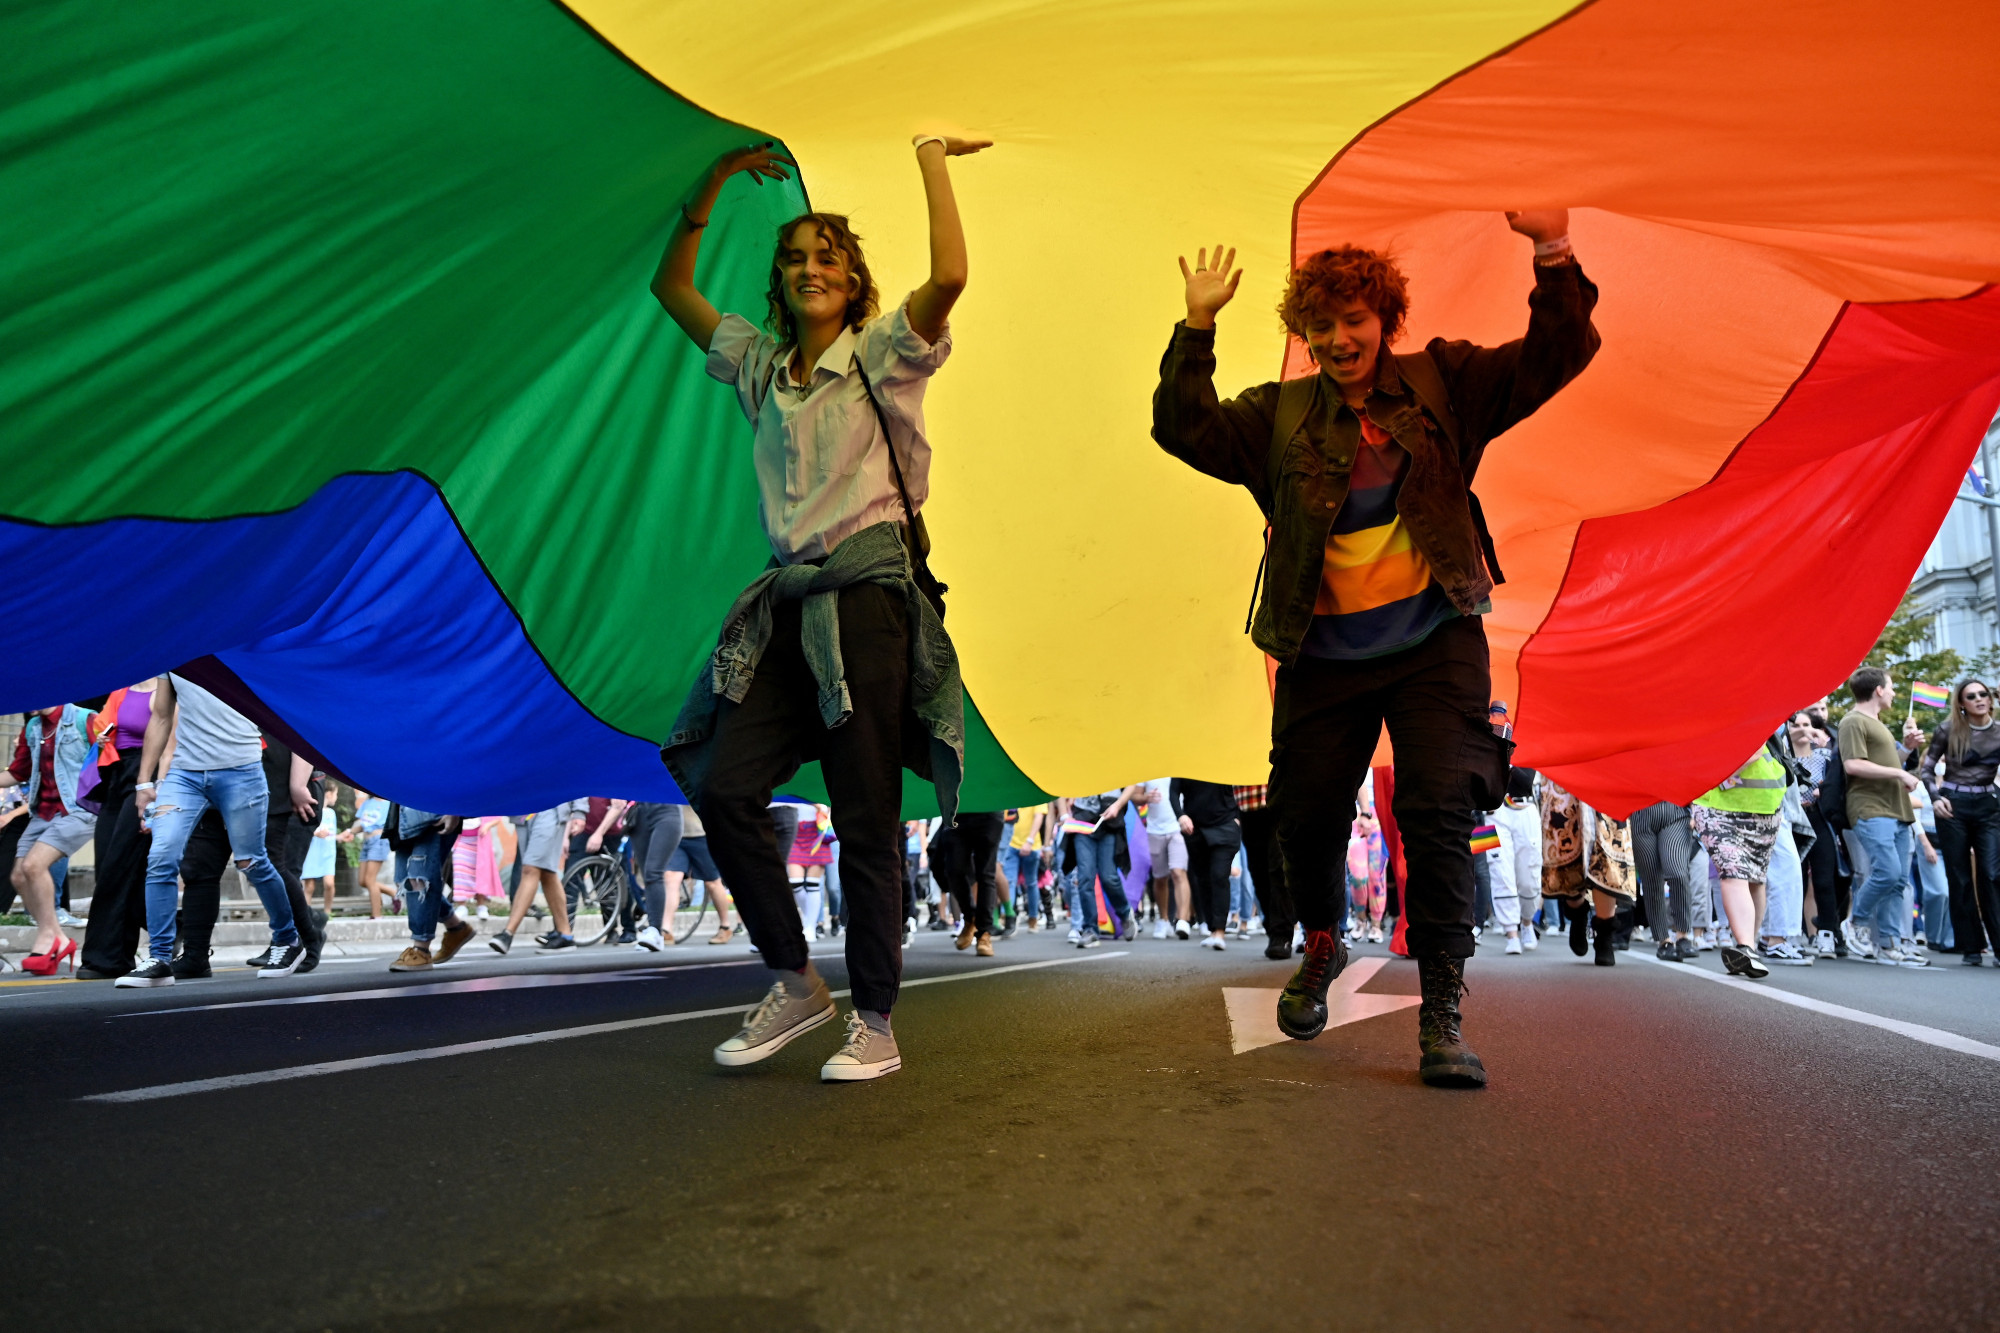 Szerbia enged az esemény ellenzőinek, nem tartják meg az EuroPride-ot Belgrádban